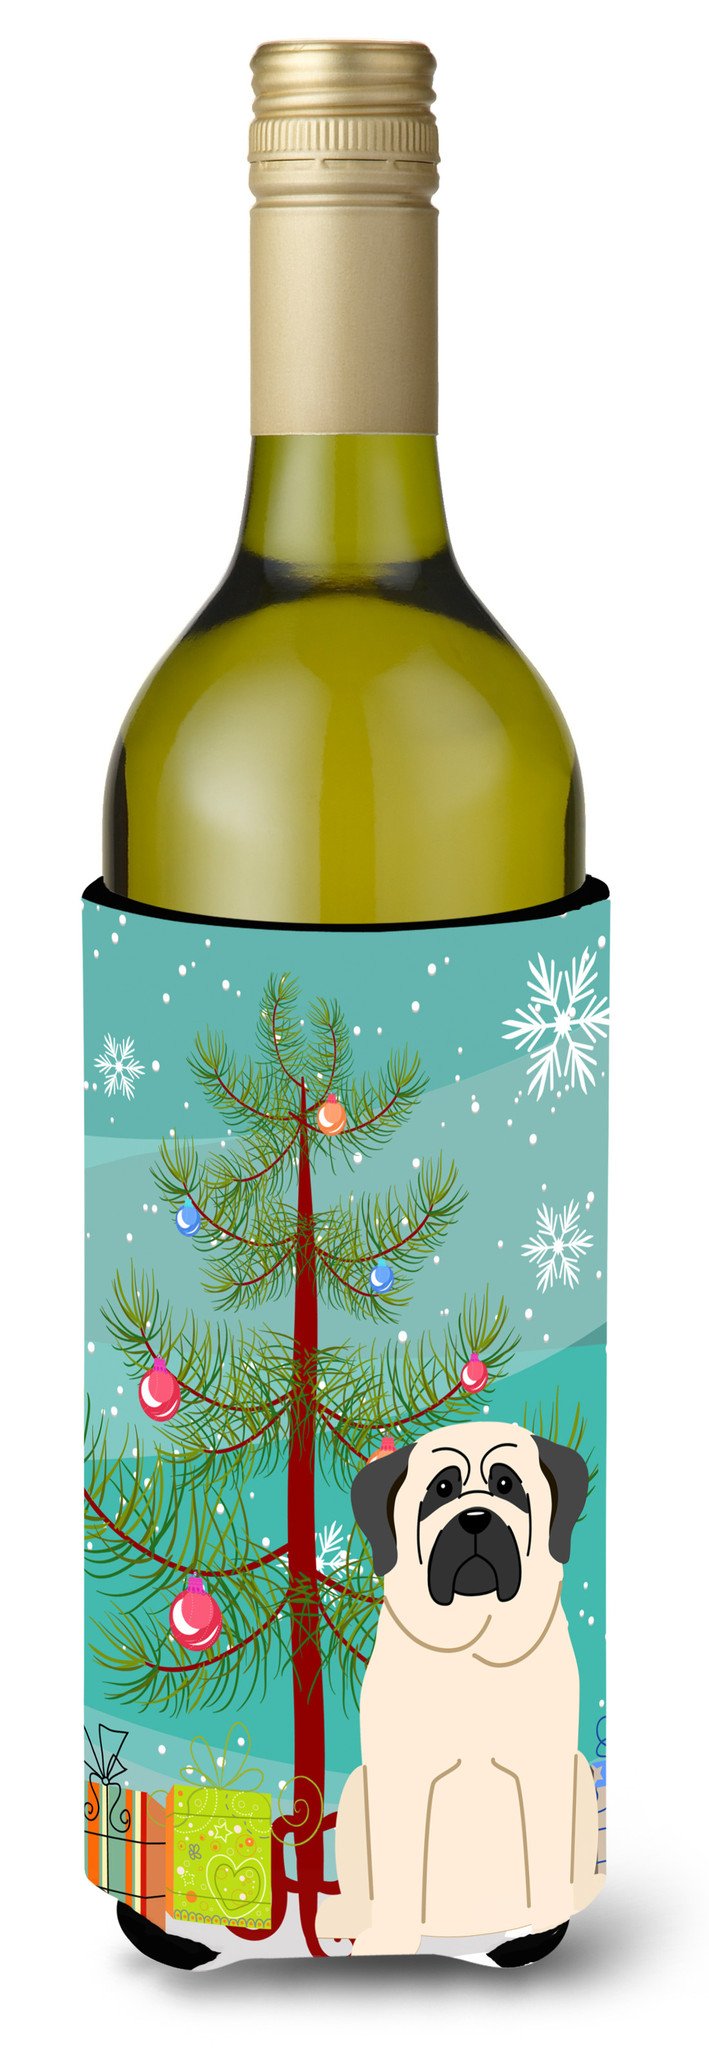 Merry Christmas Tree Mastiff White Wine Bottle Beverge Insulator Hugger BB4142LITERK by Caroline's Treasures